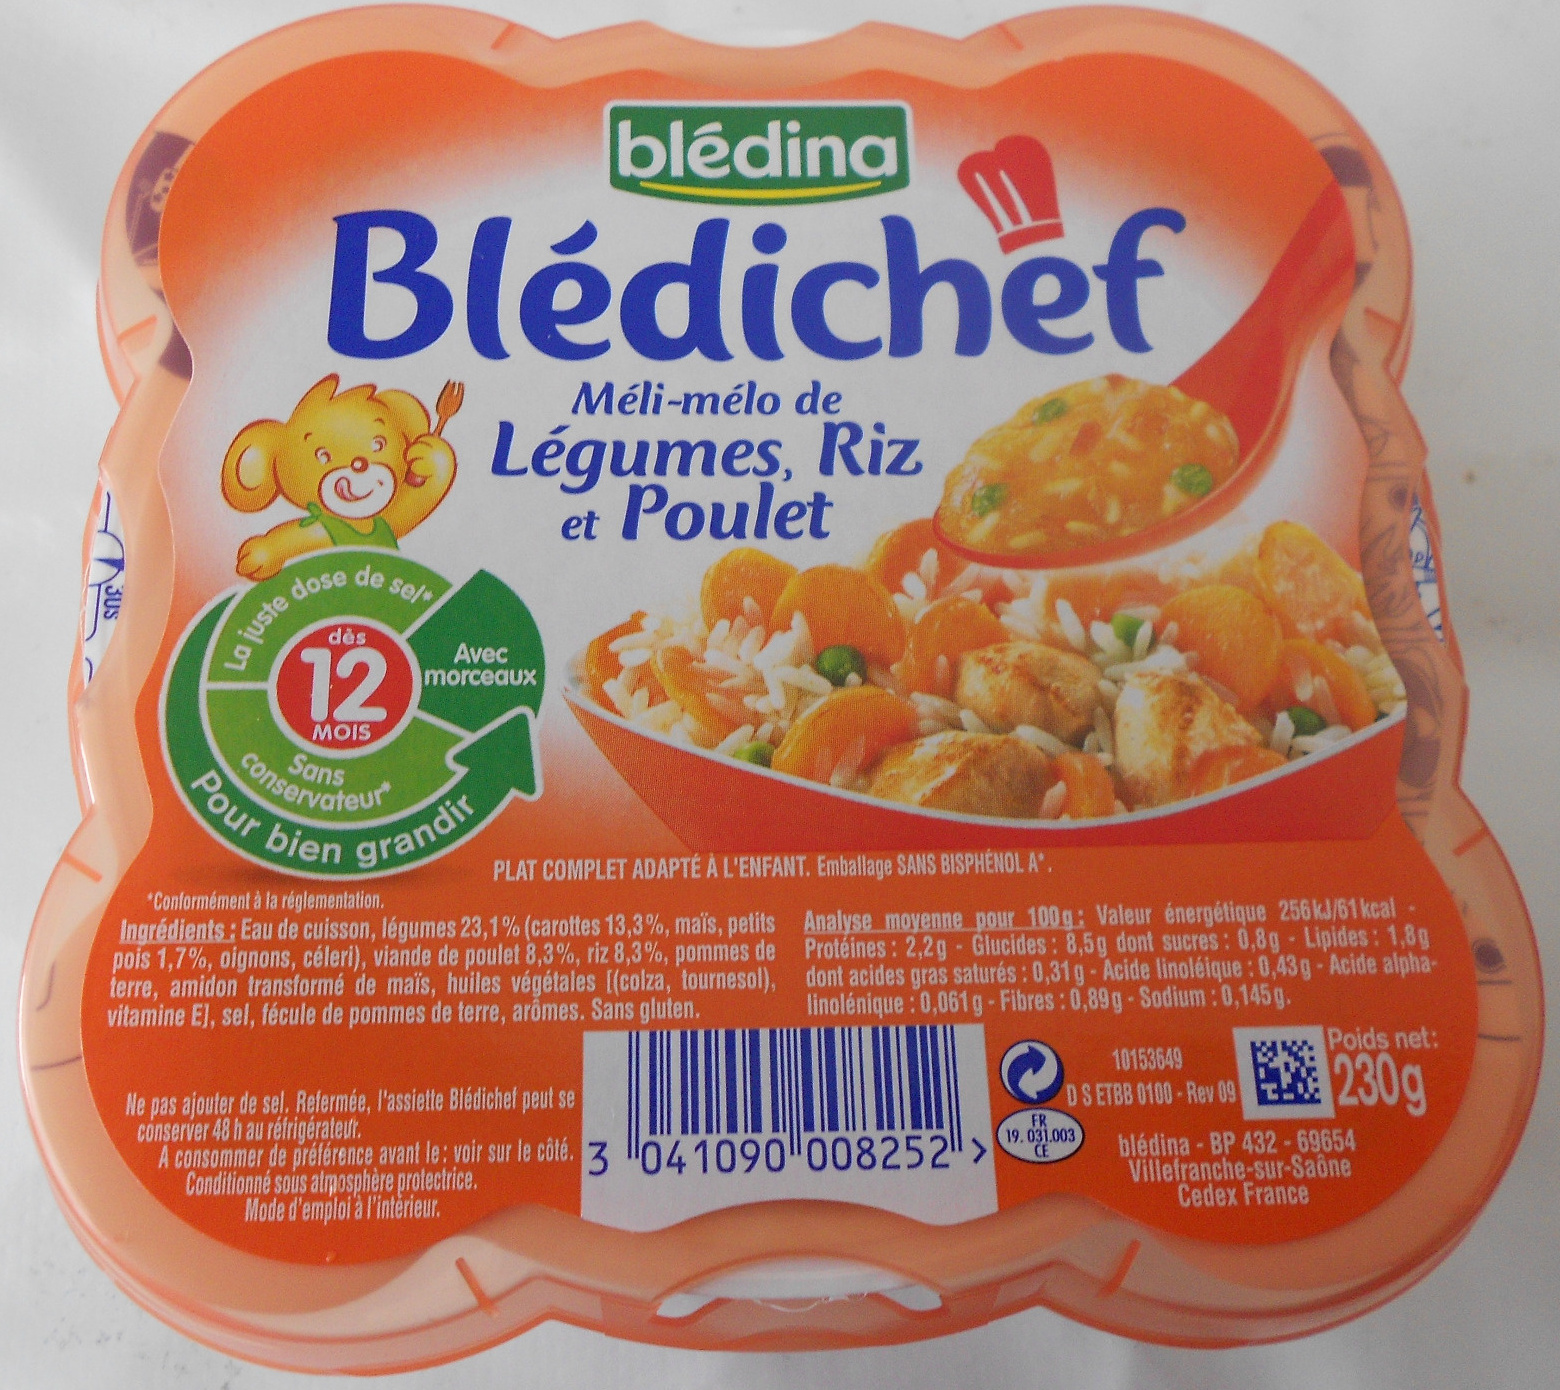 Blédichef méli-mélo de légumes, riz et poulet - Product - fr